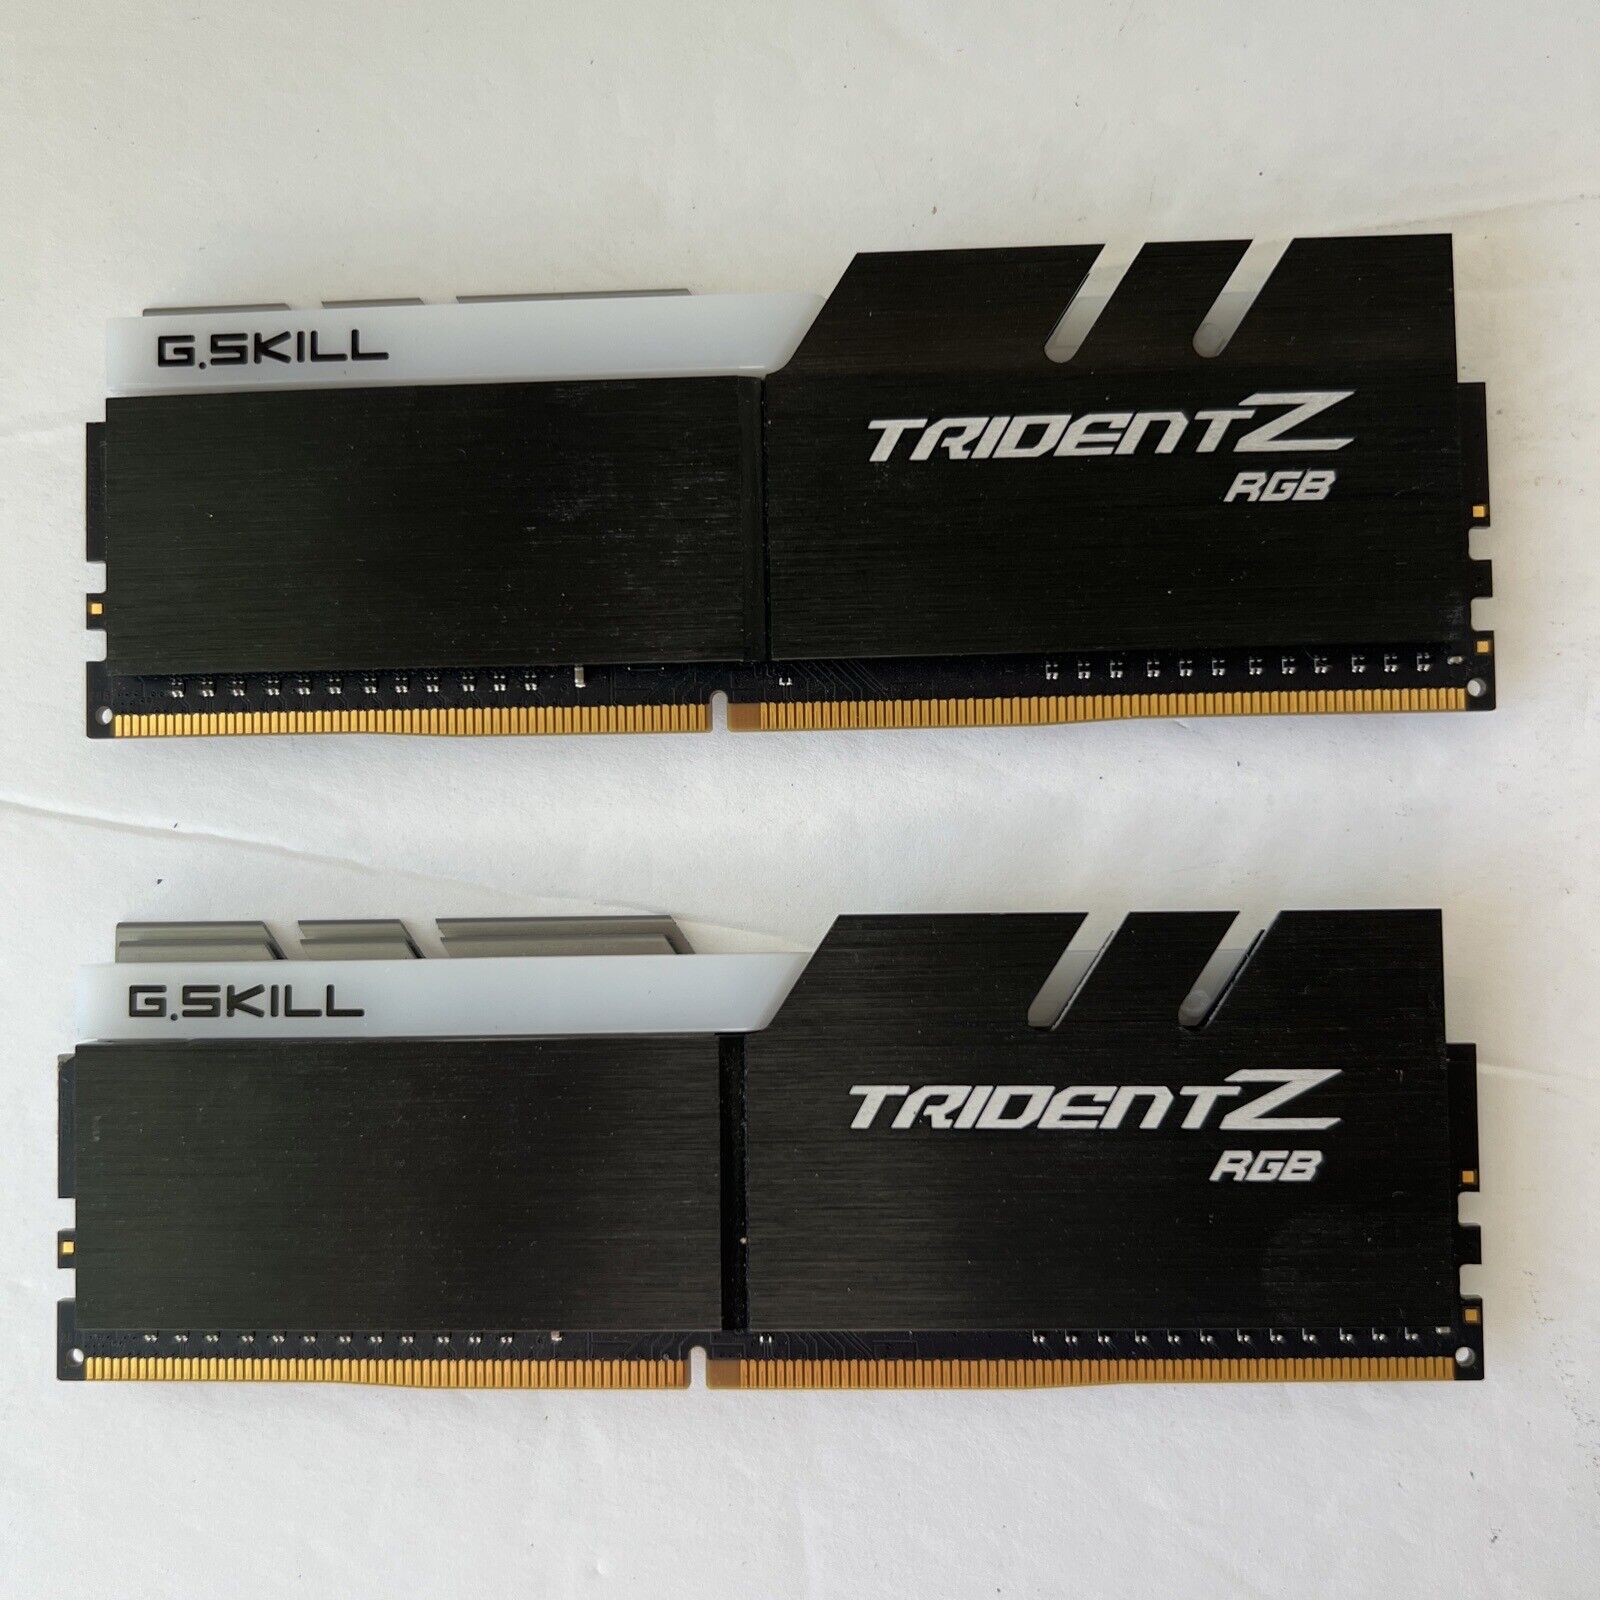 G. SKILL Trident Z RGB 16GB DDR4 3200 MHz  (F4-3200C16D-16GTZR)